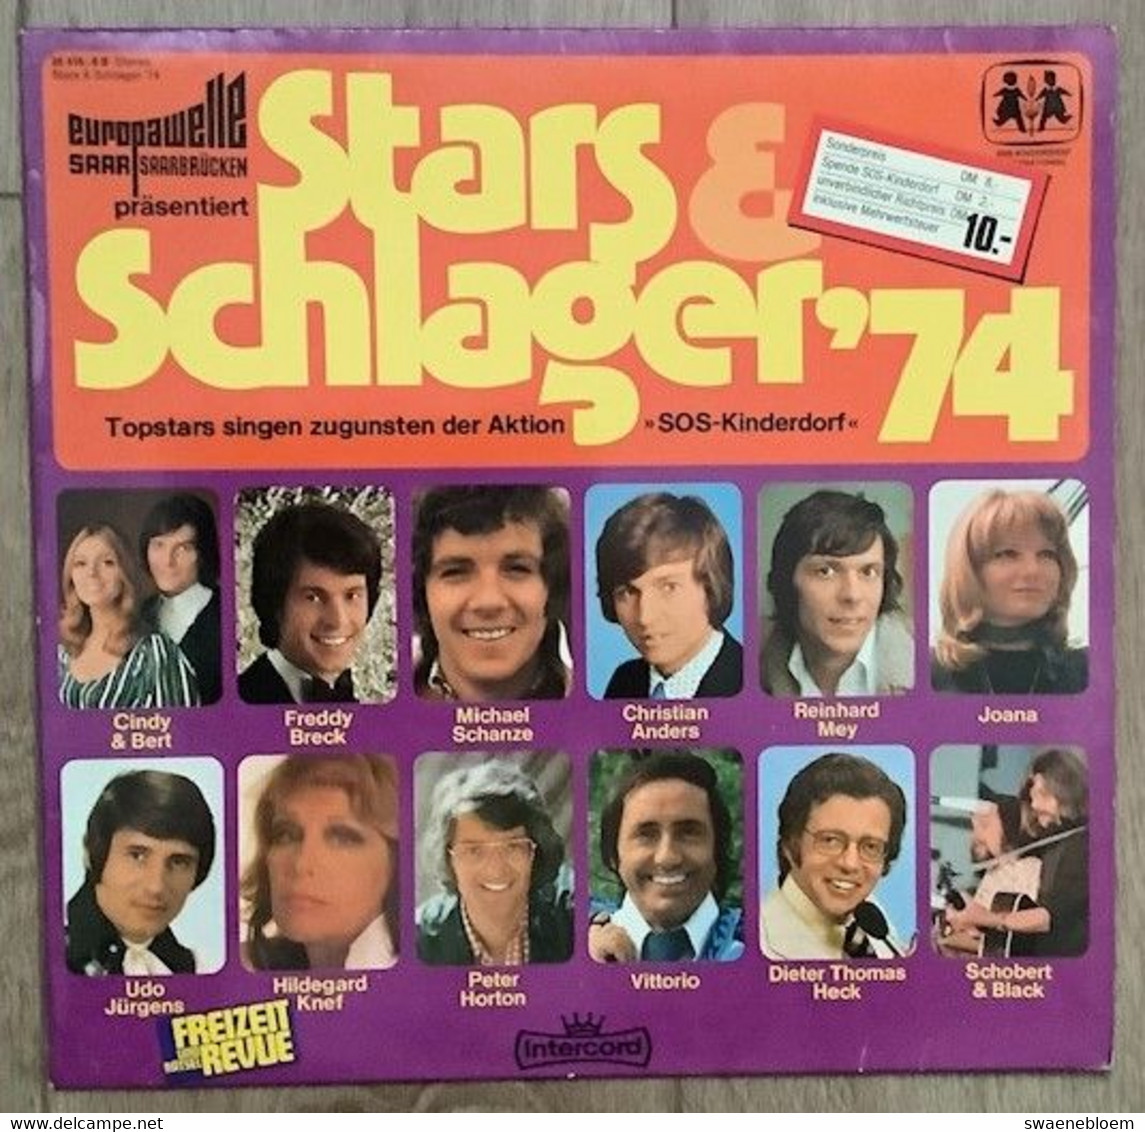 LP.- STARS & SCHLAGERS '74. Topstars Singen Zugunsten Der Aktion "SOS" Kinderdorf. - Collector's Editions